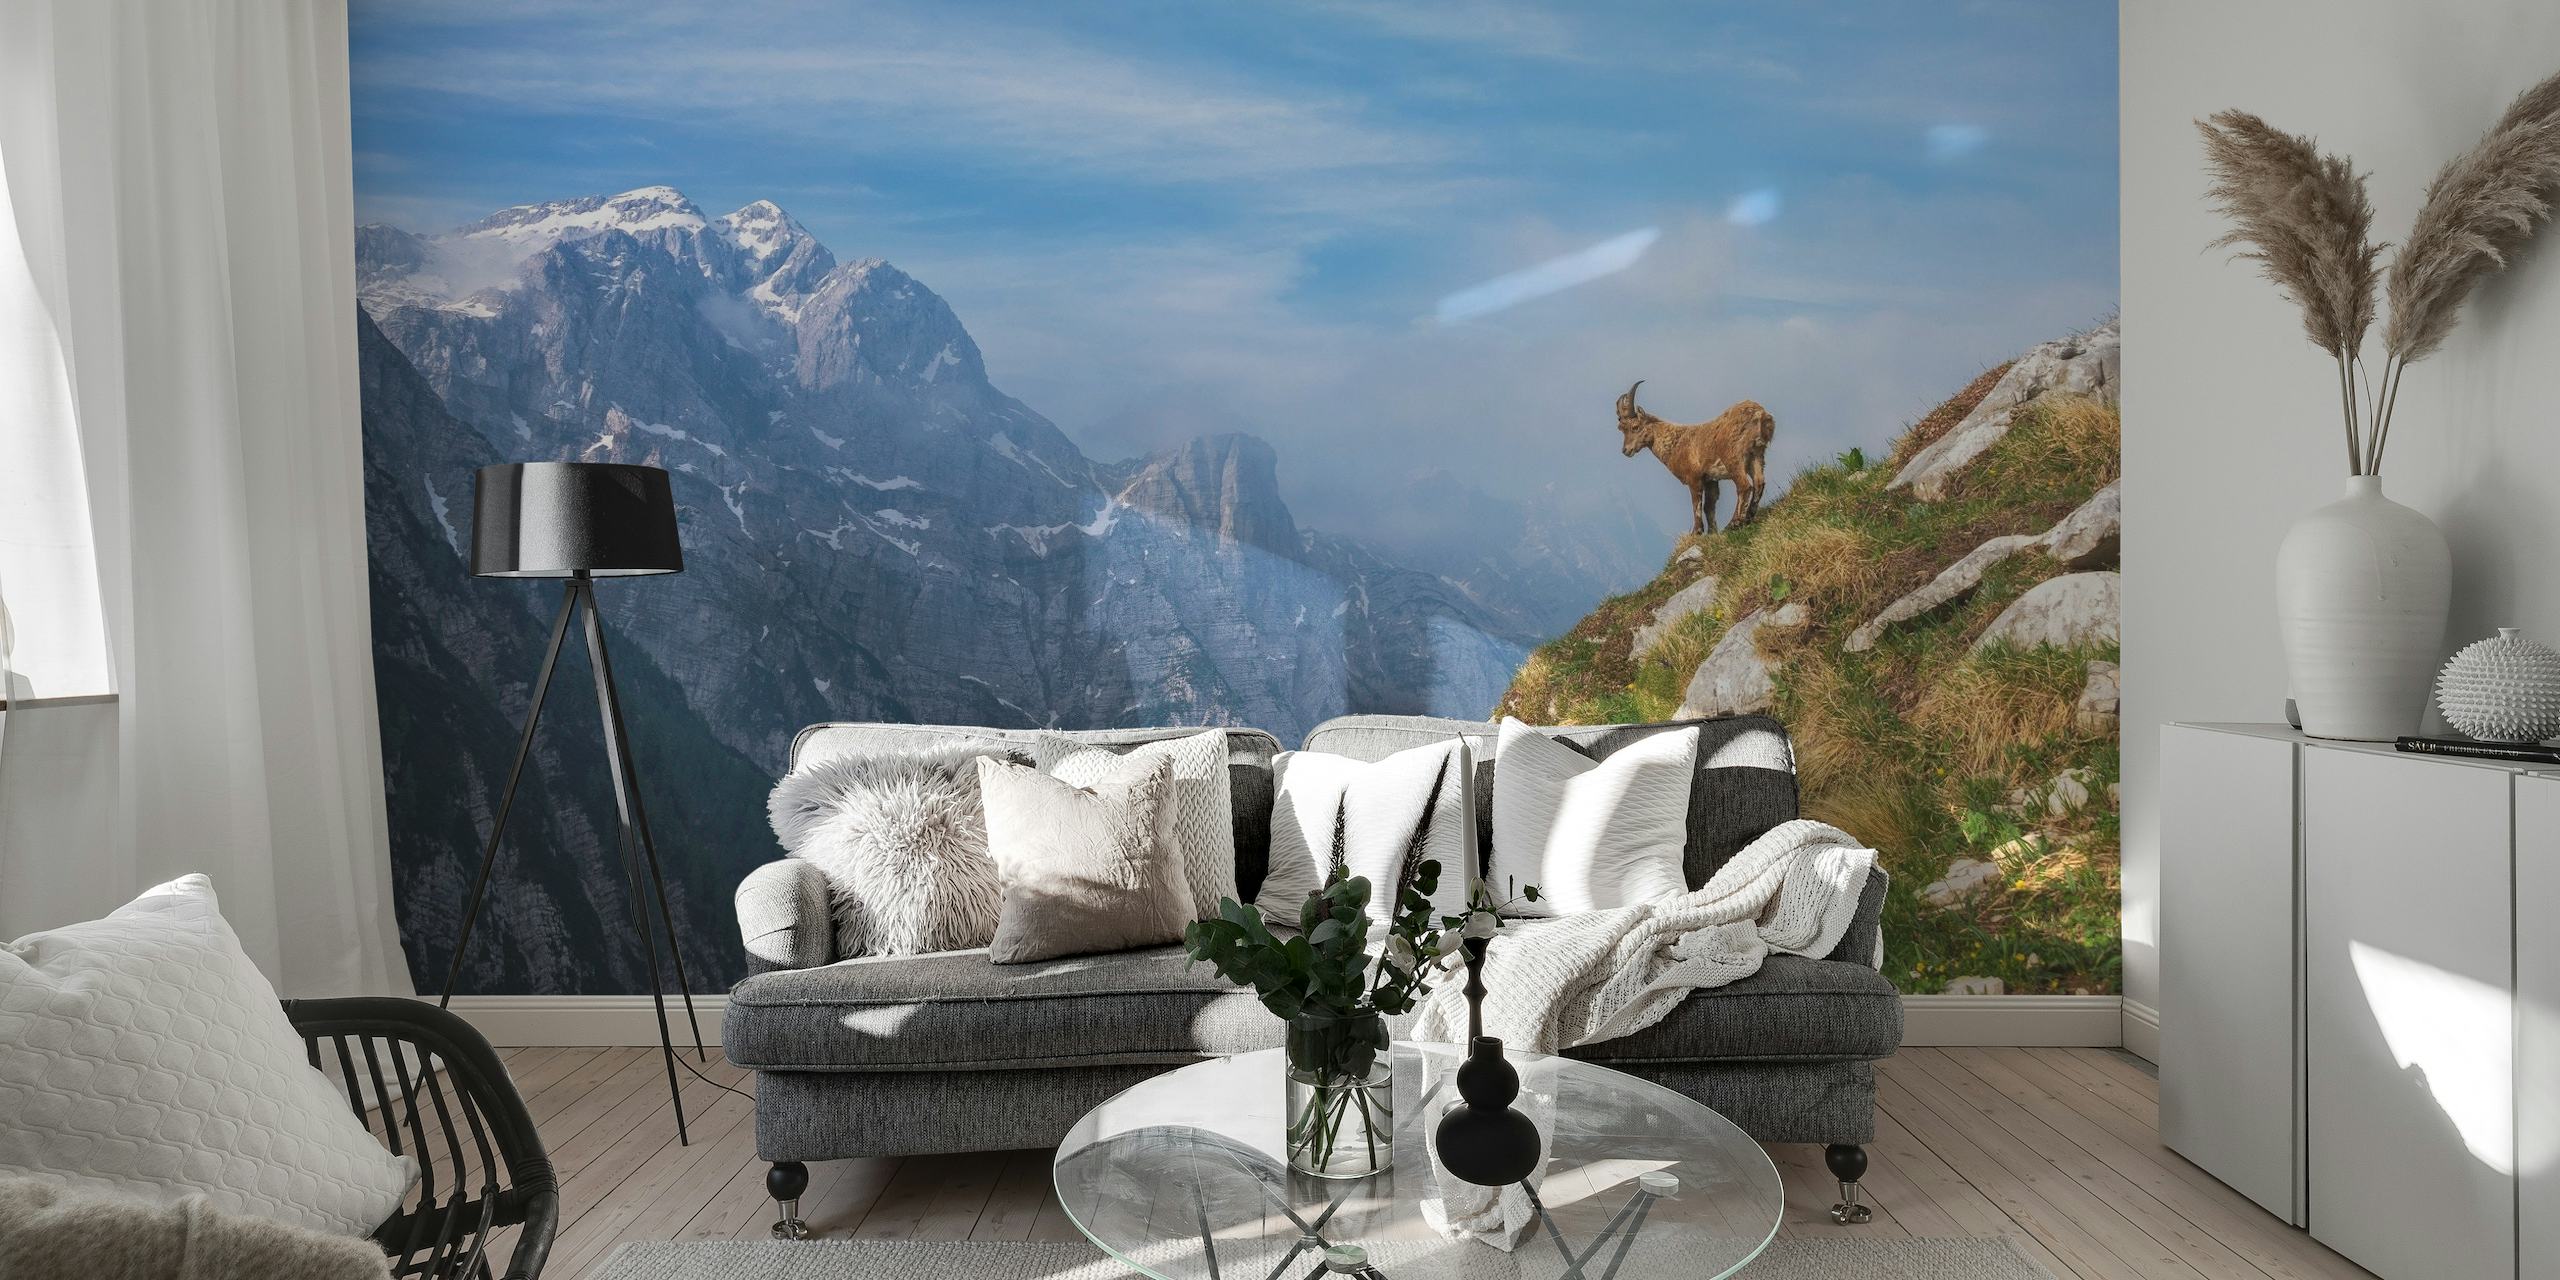 Kozorožec alpský stojící na horské římse s malebným výhledem na hory v pozadí